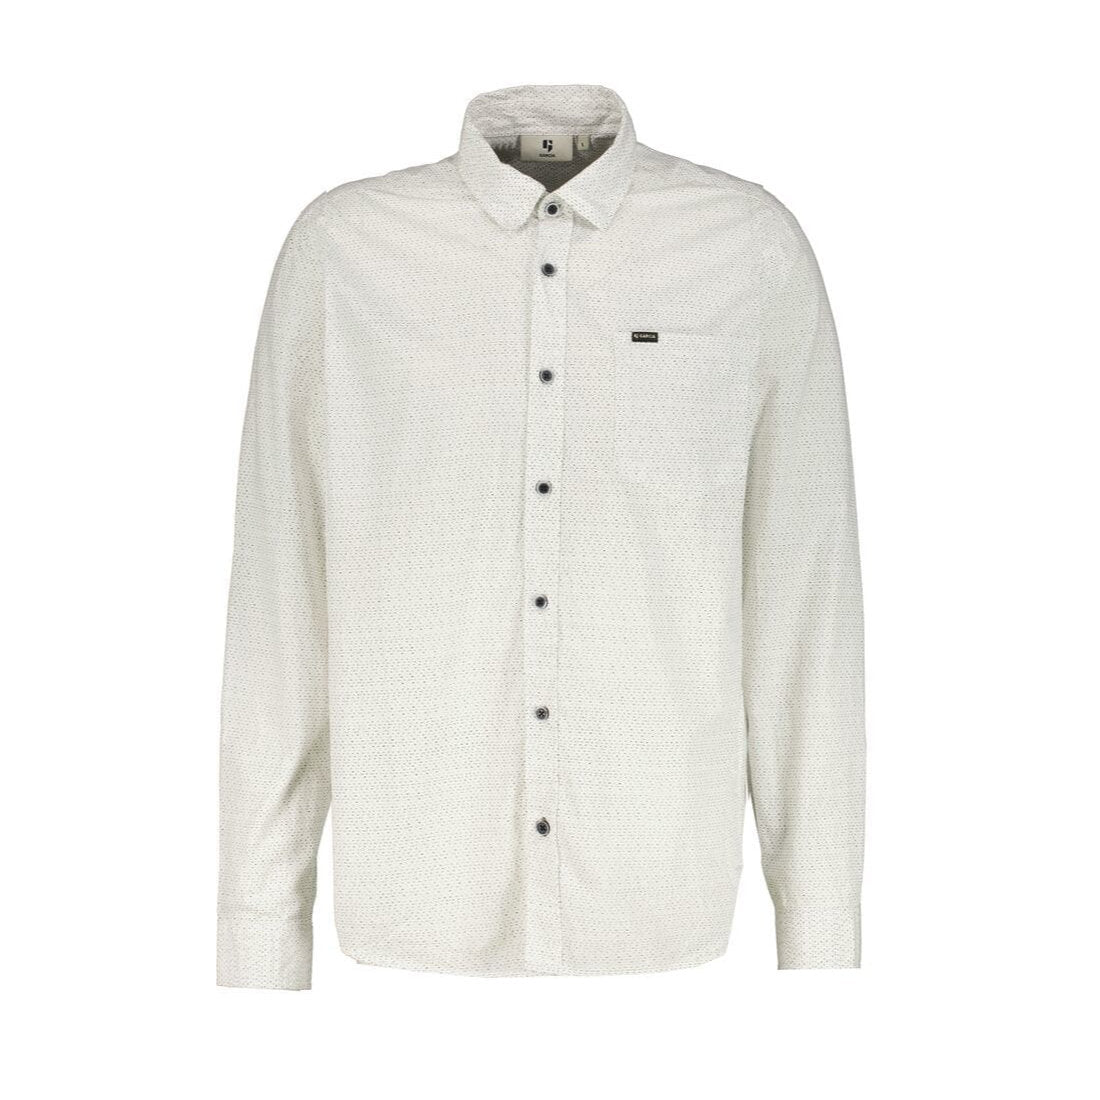 Garcia T21082 Cotton Dress Shirt White